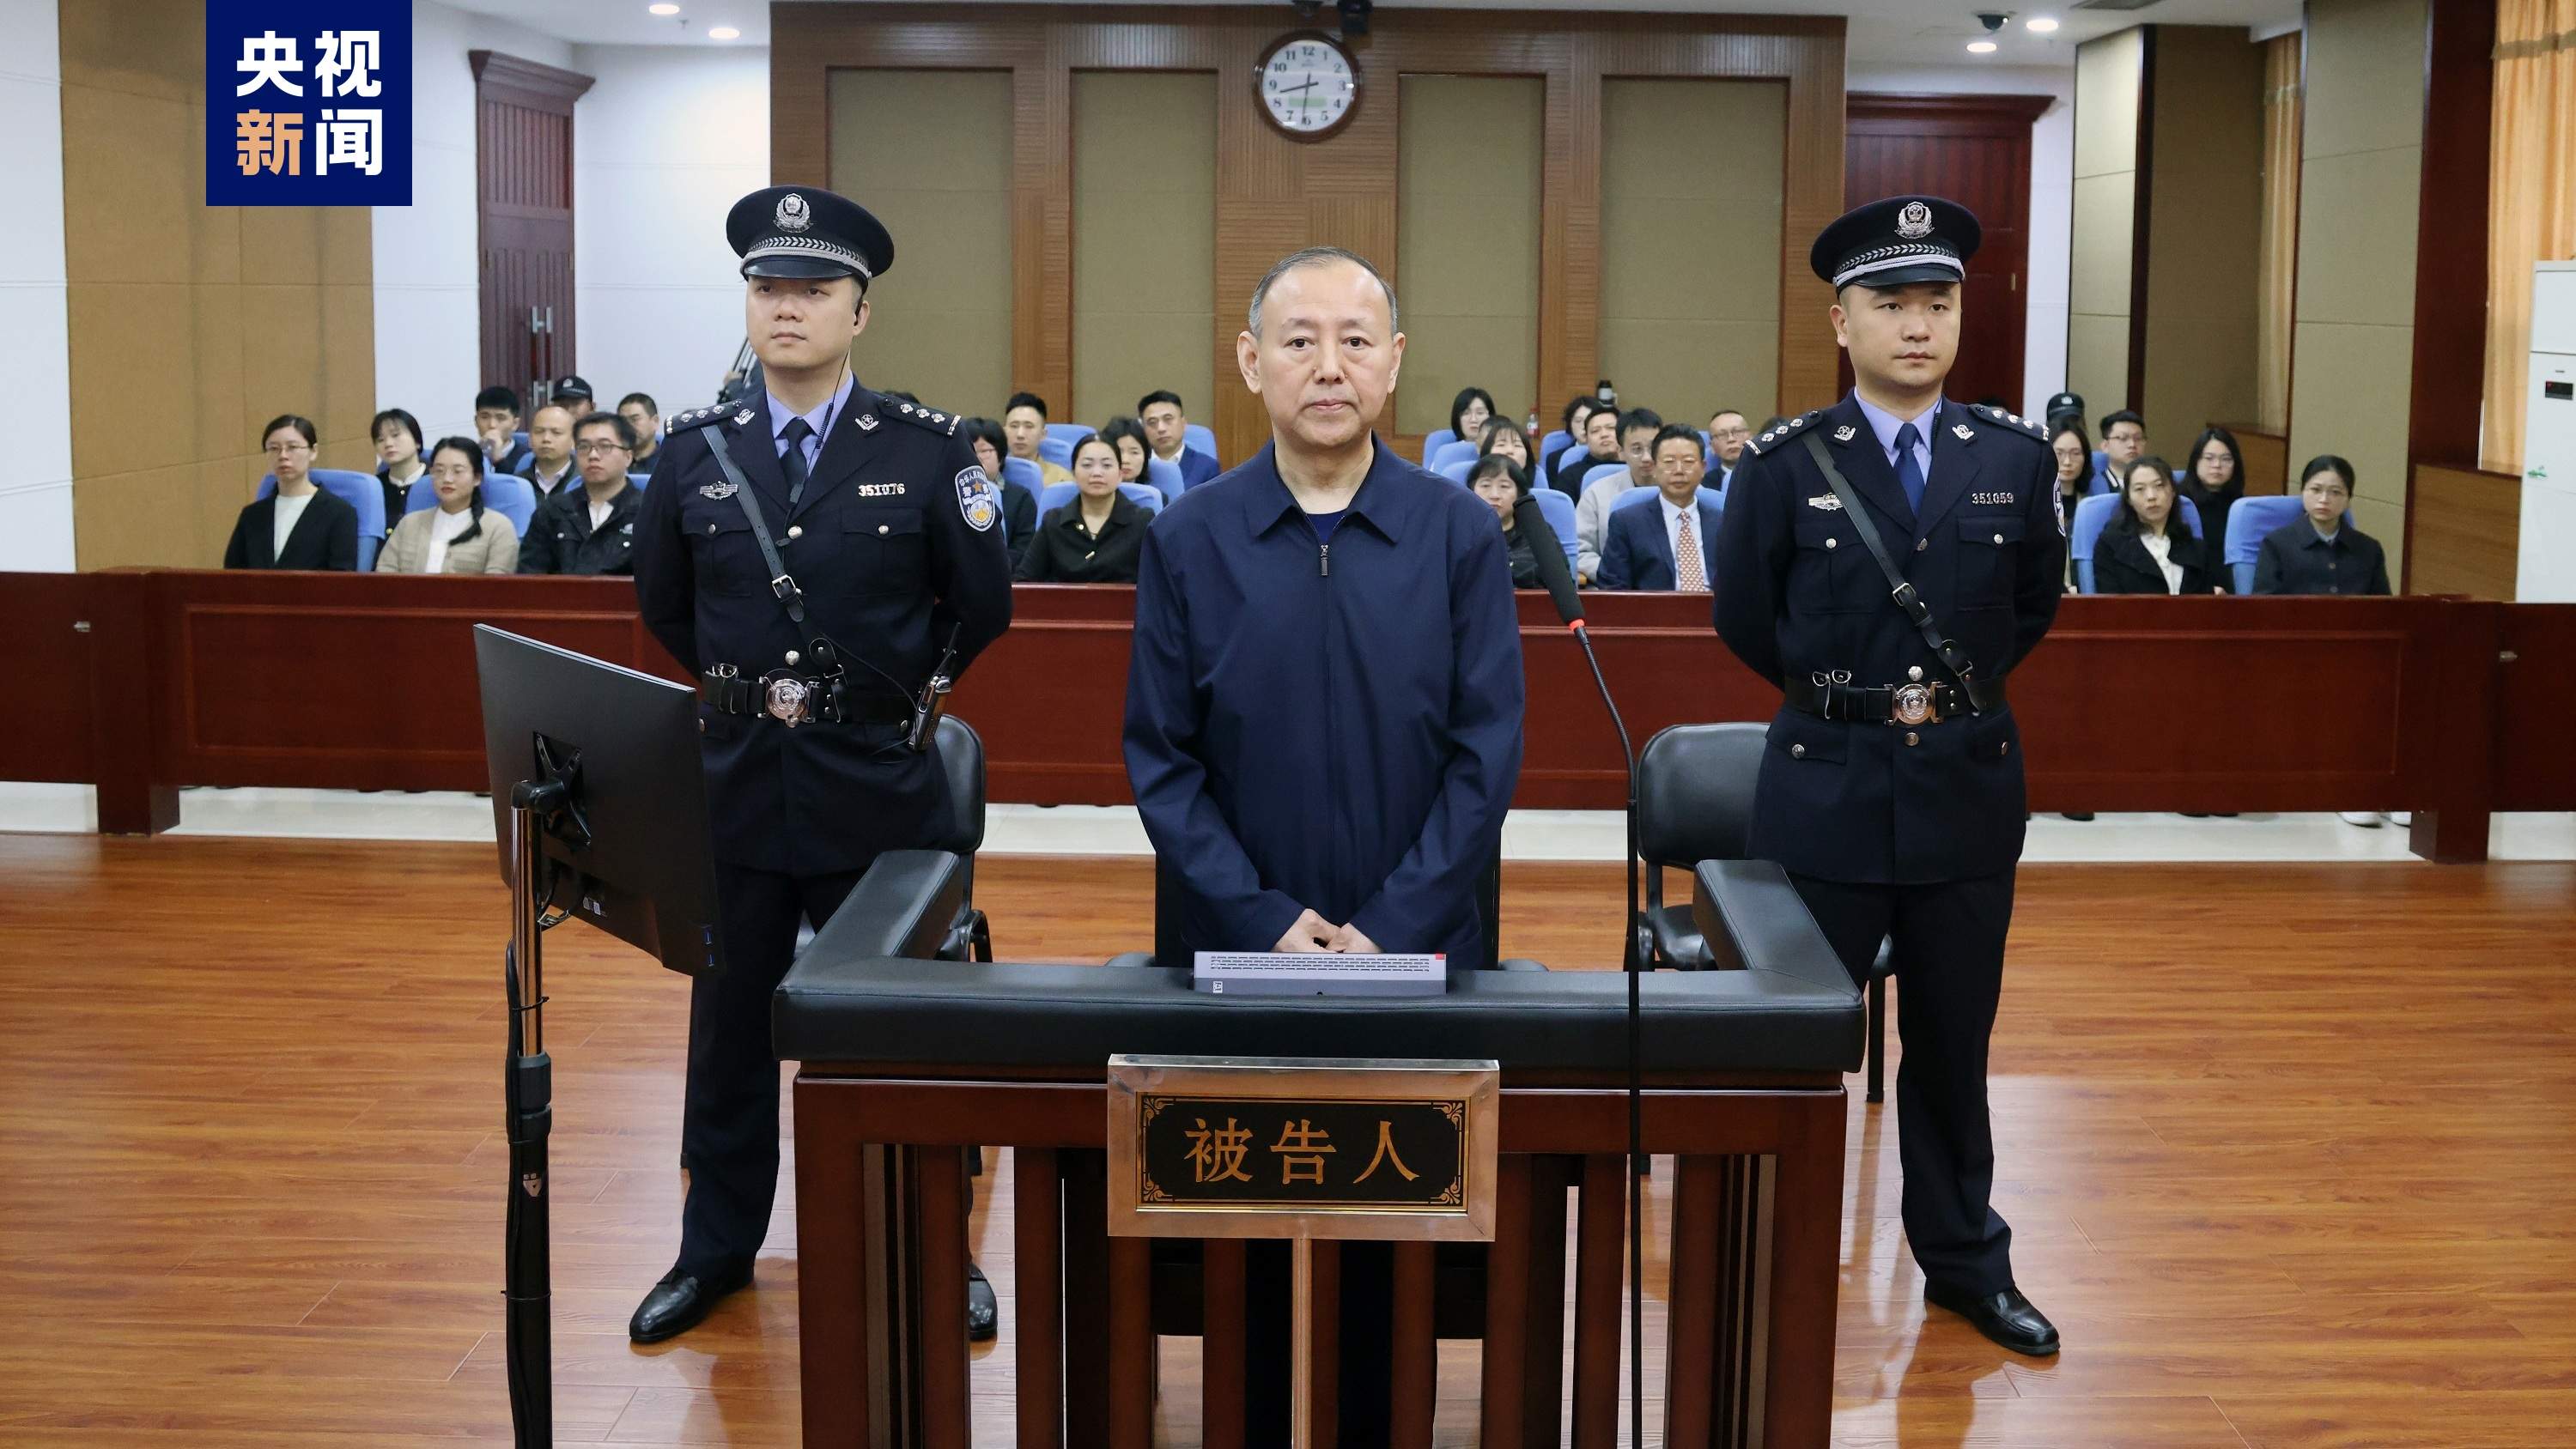 原应急统治部消防援救局副局长张福生受贿案一审开庭